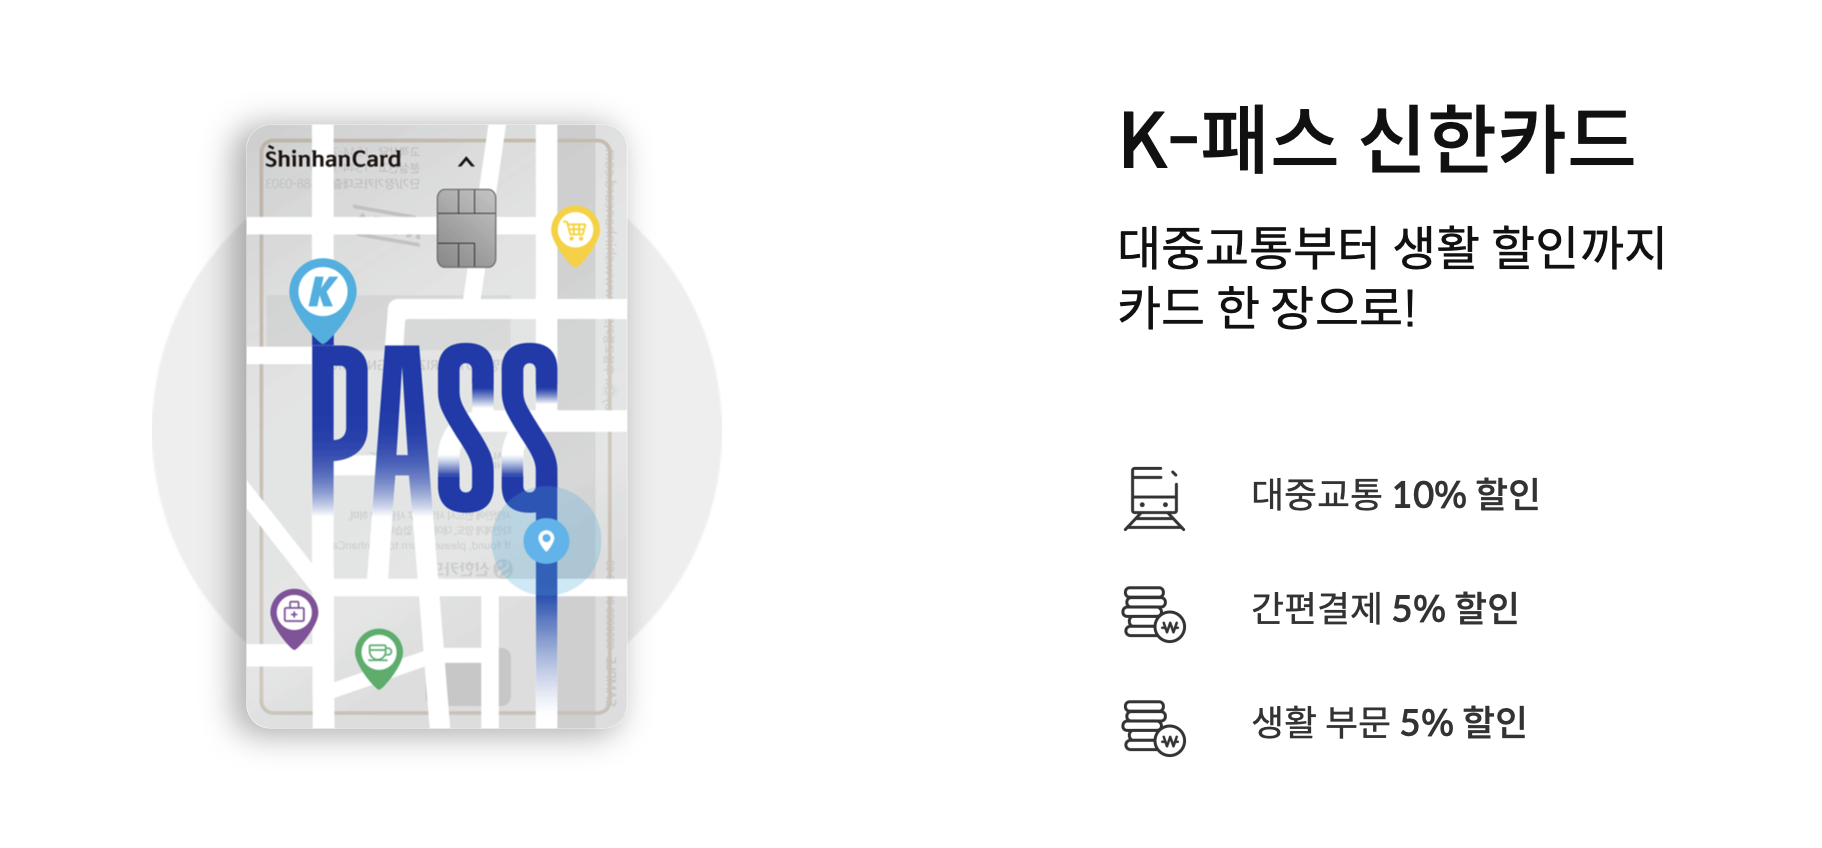 신한카드 K-패스